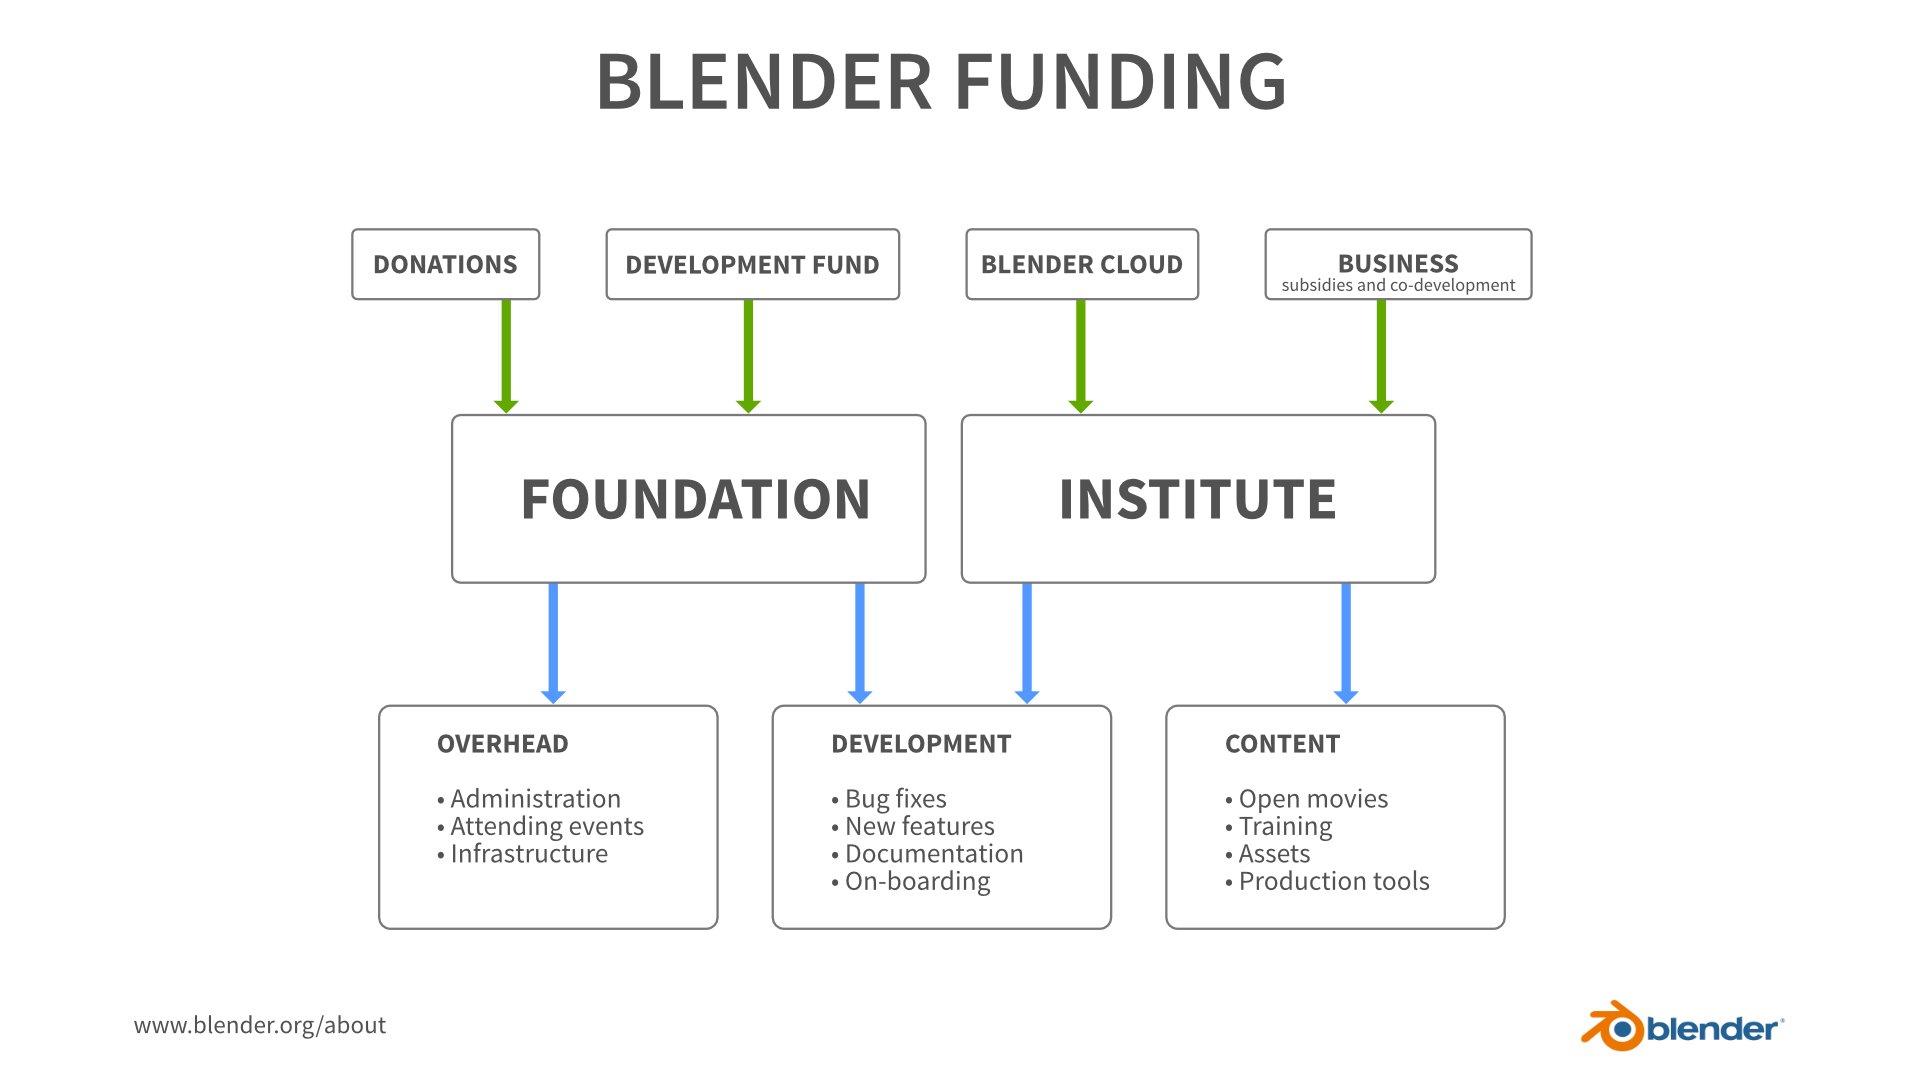 Blender funding